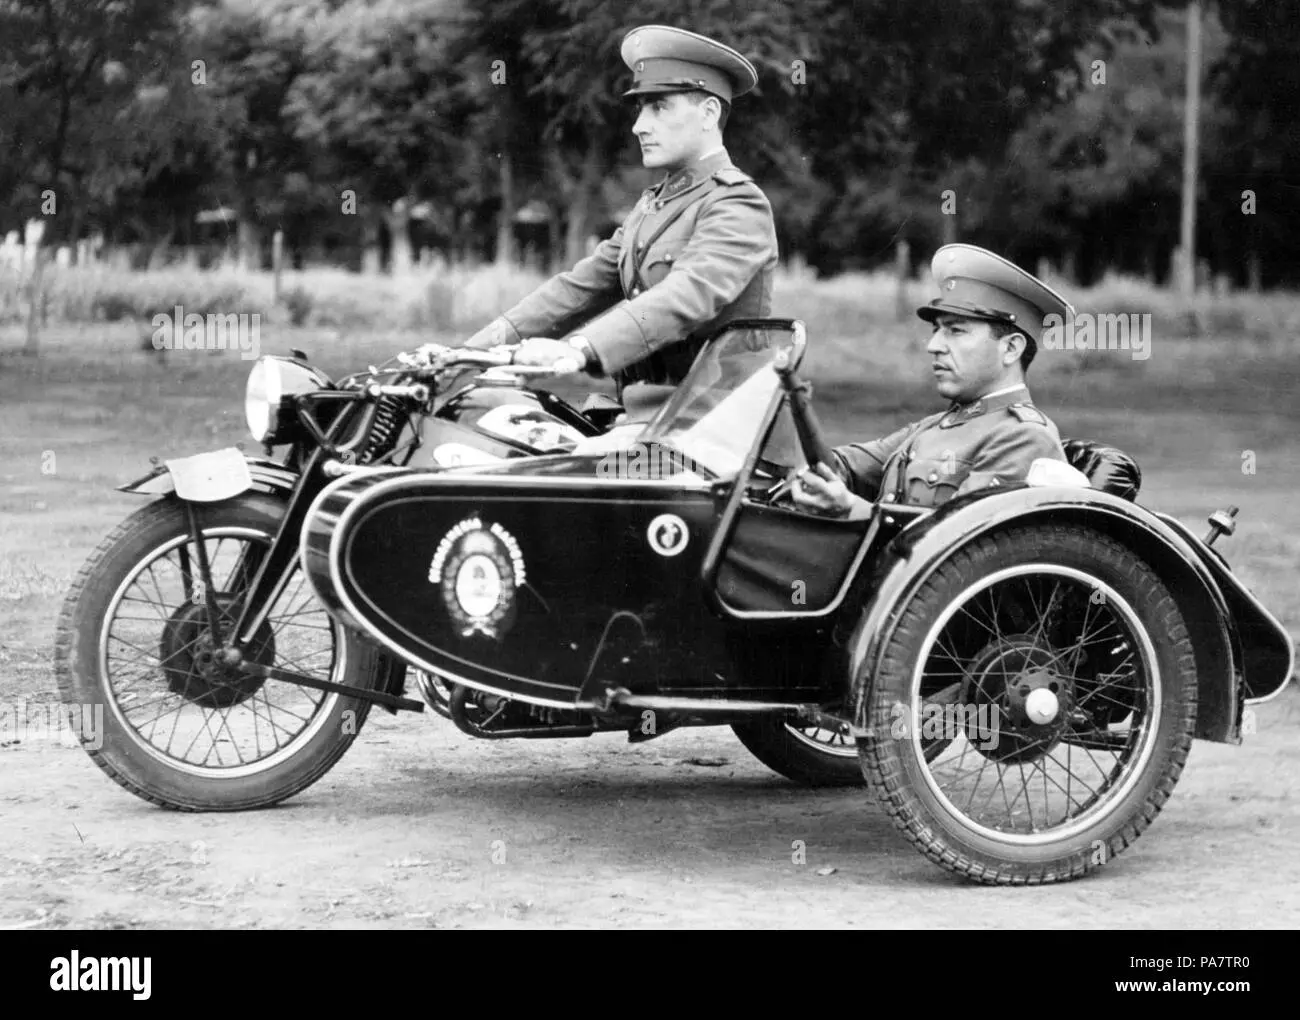 gendarmeria motos - Qué es la policía gendarmeria